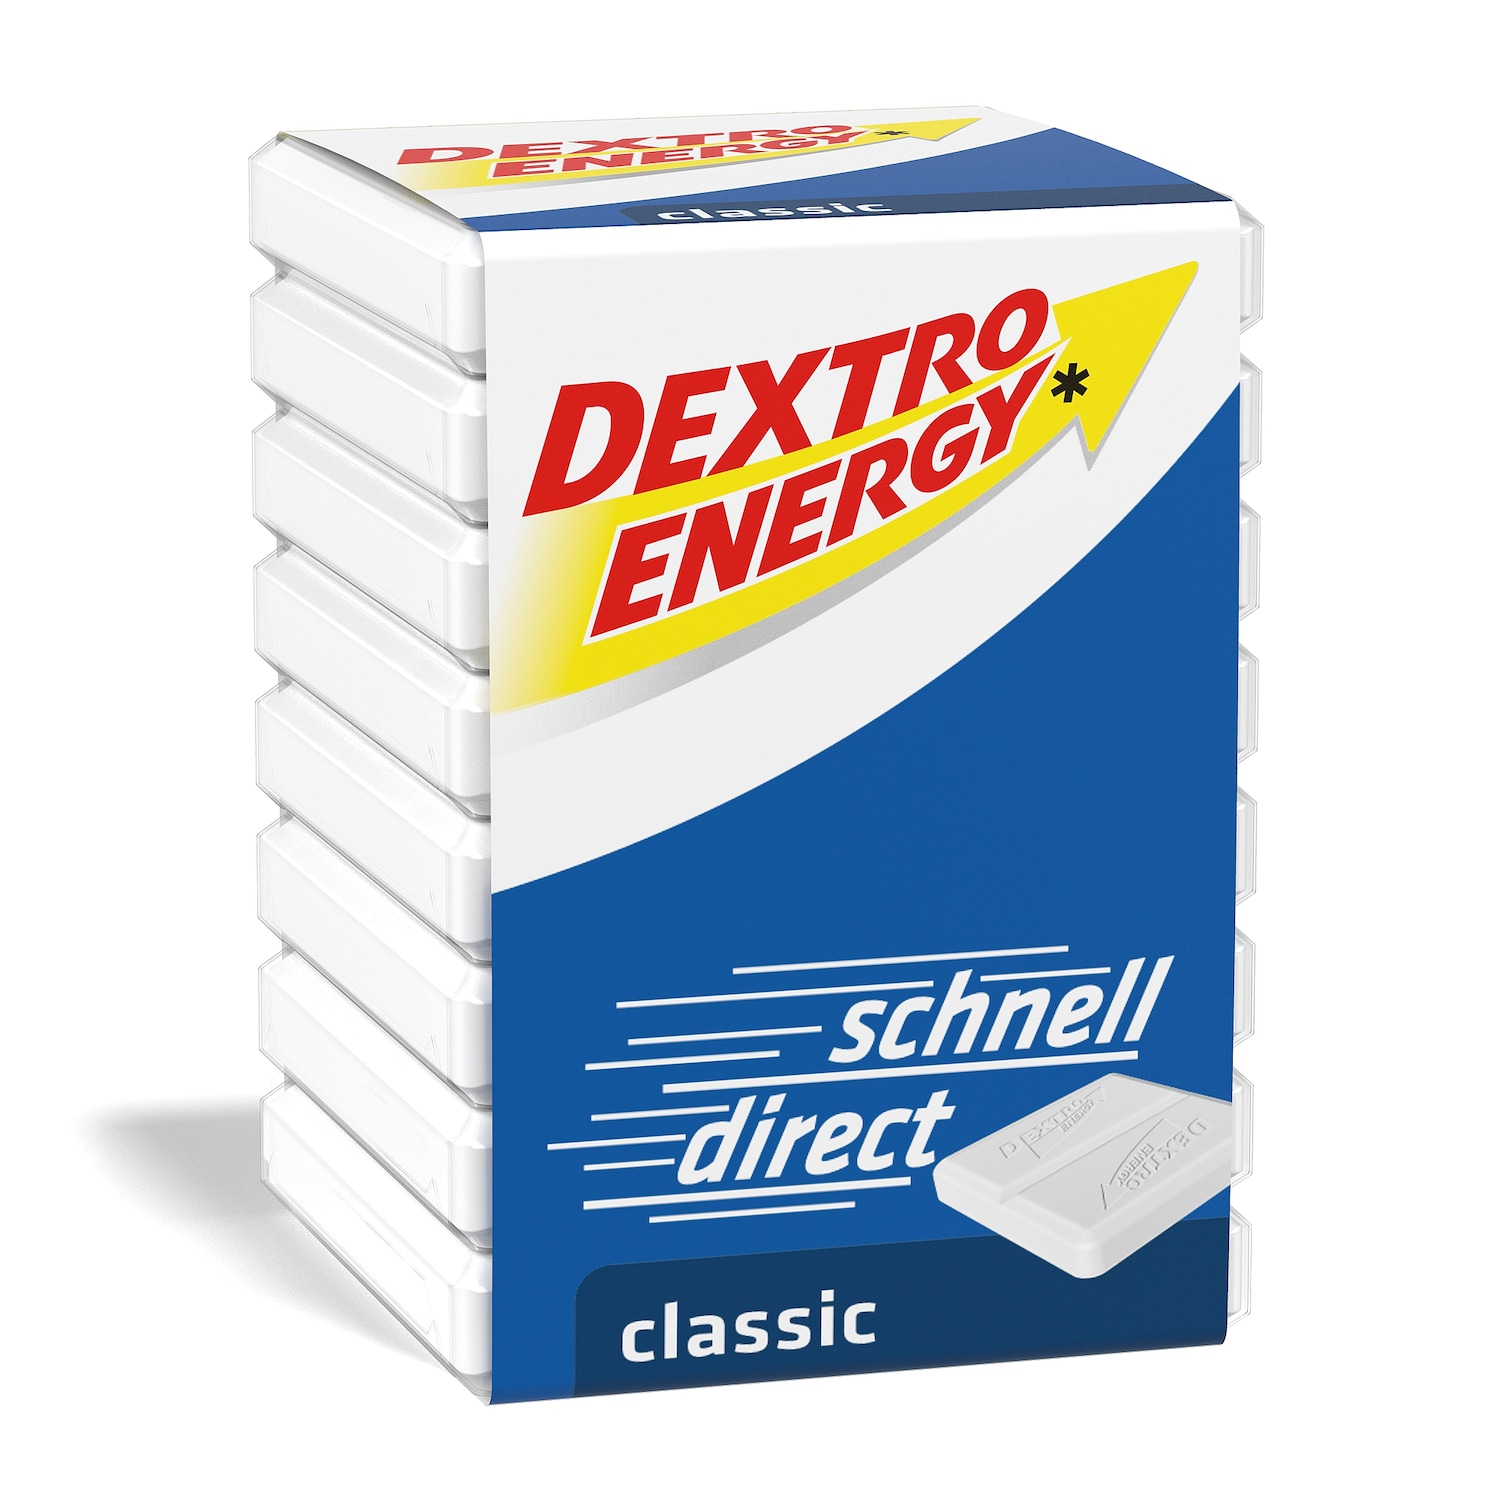 Kyberg Pharma DEXTRO ENERGEN classic dice